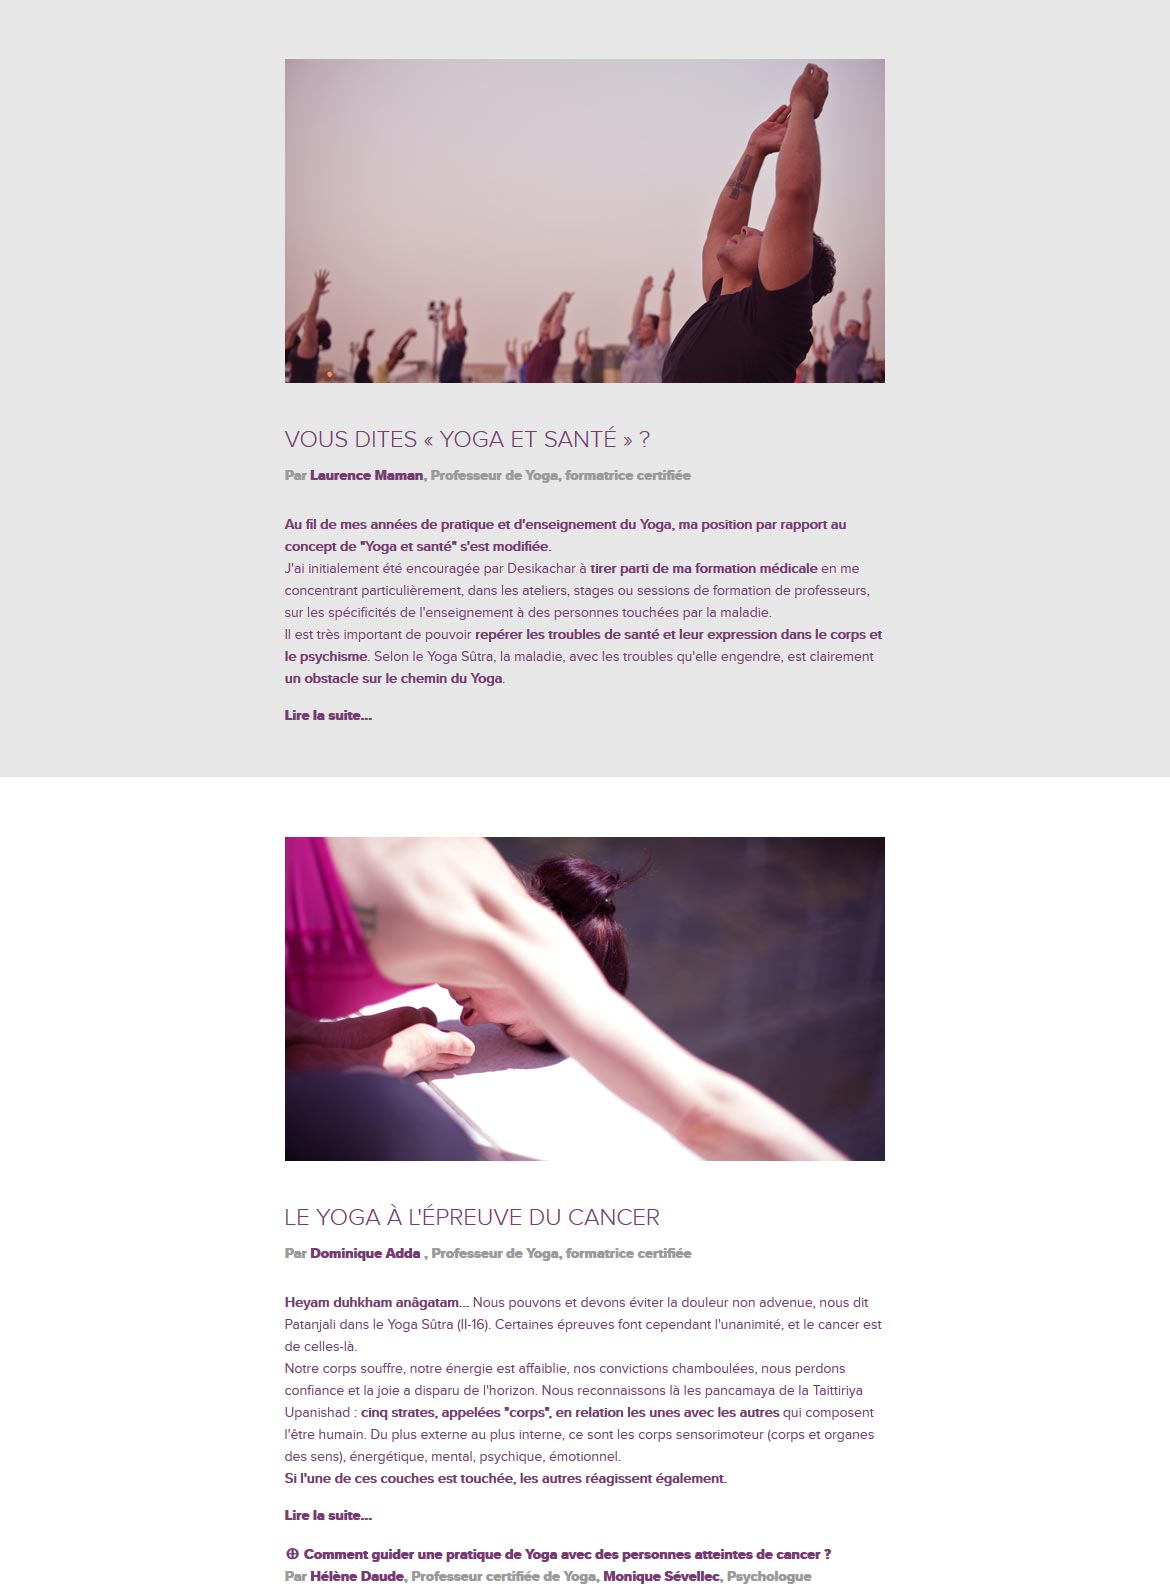 Yoga et santé : la newsletter de l'Institut Français de Yoga juin 2016